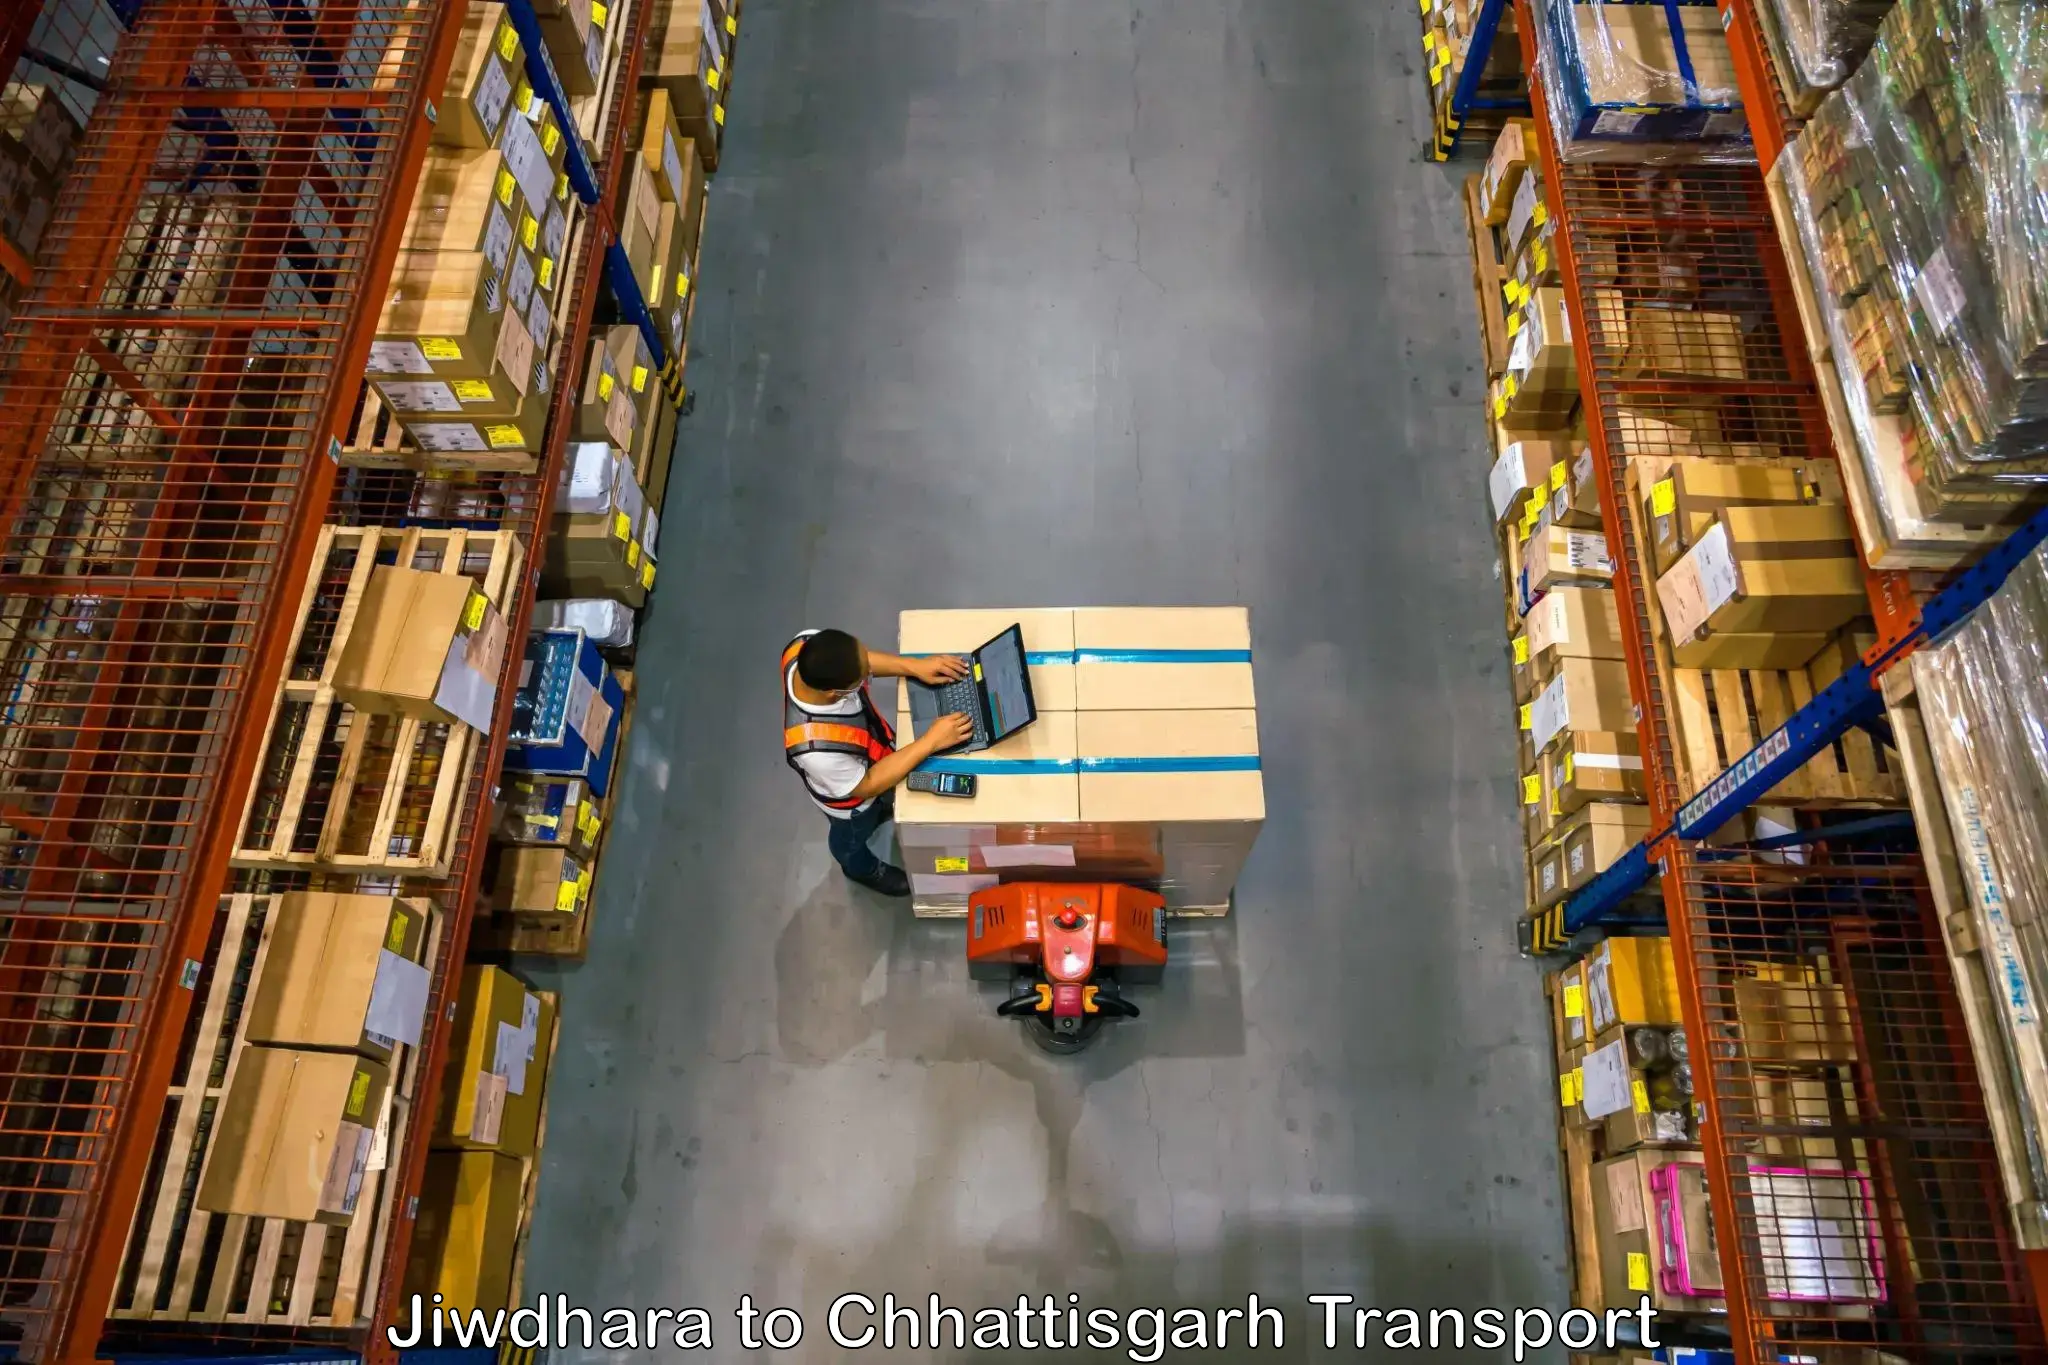 Bike shipping service Jiwdhara to Chhattisgarh